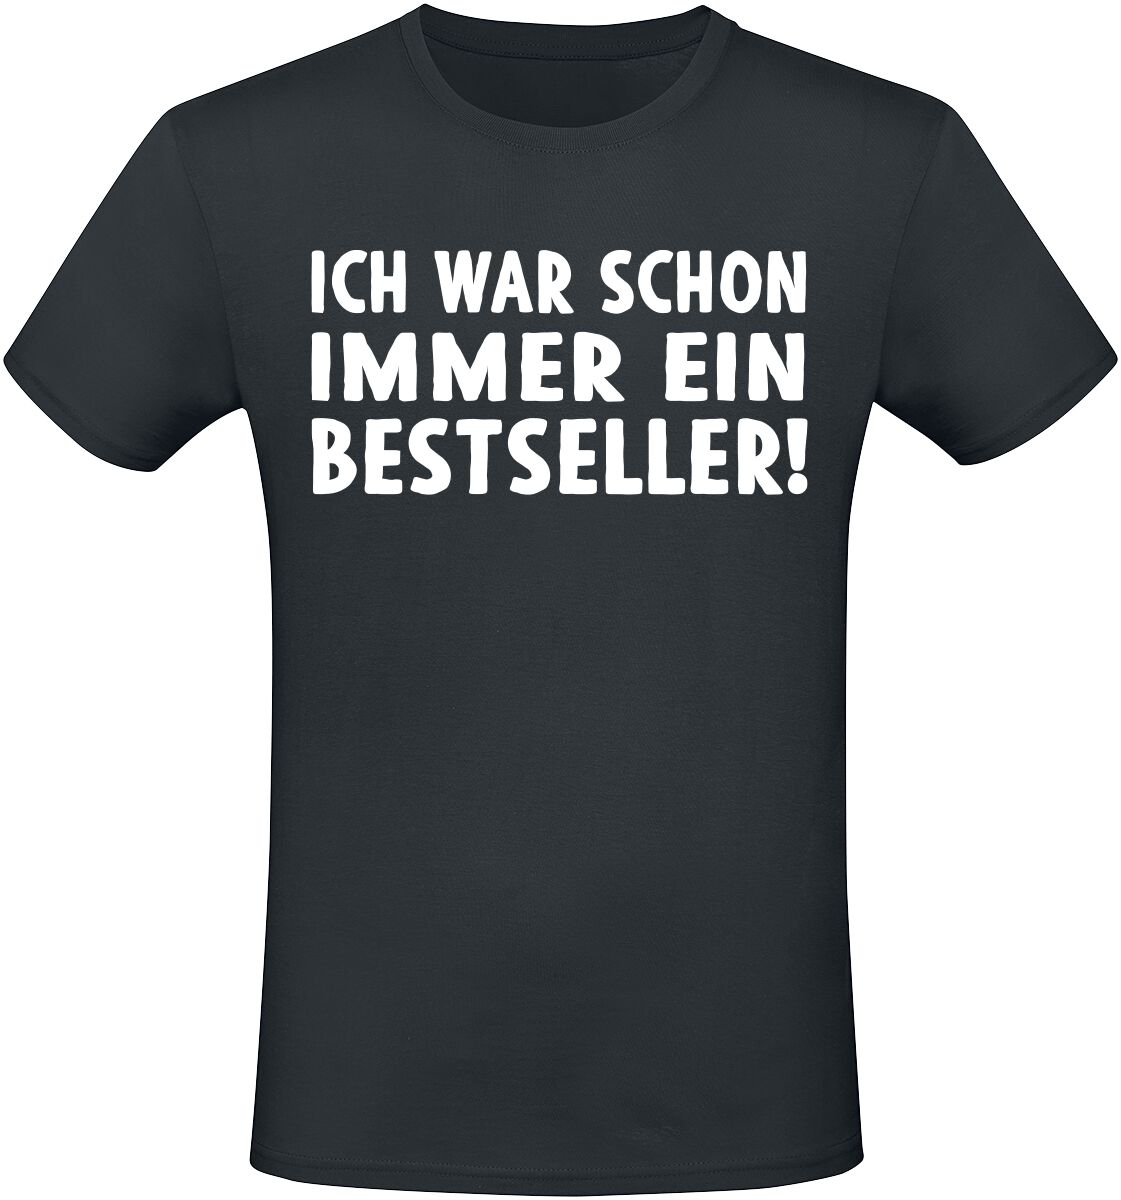 Sprüche T-Shirt - Ich war schon immer ein Bestseller! - M bis 5XL - für Männer - Größe M - schwarz